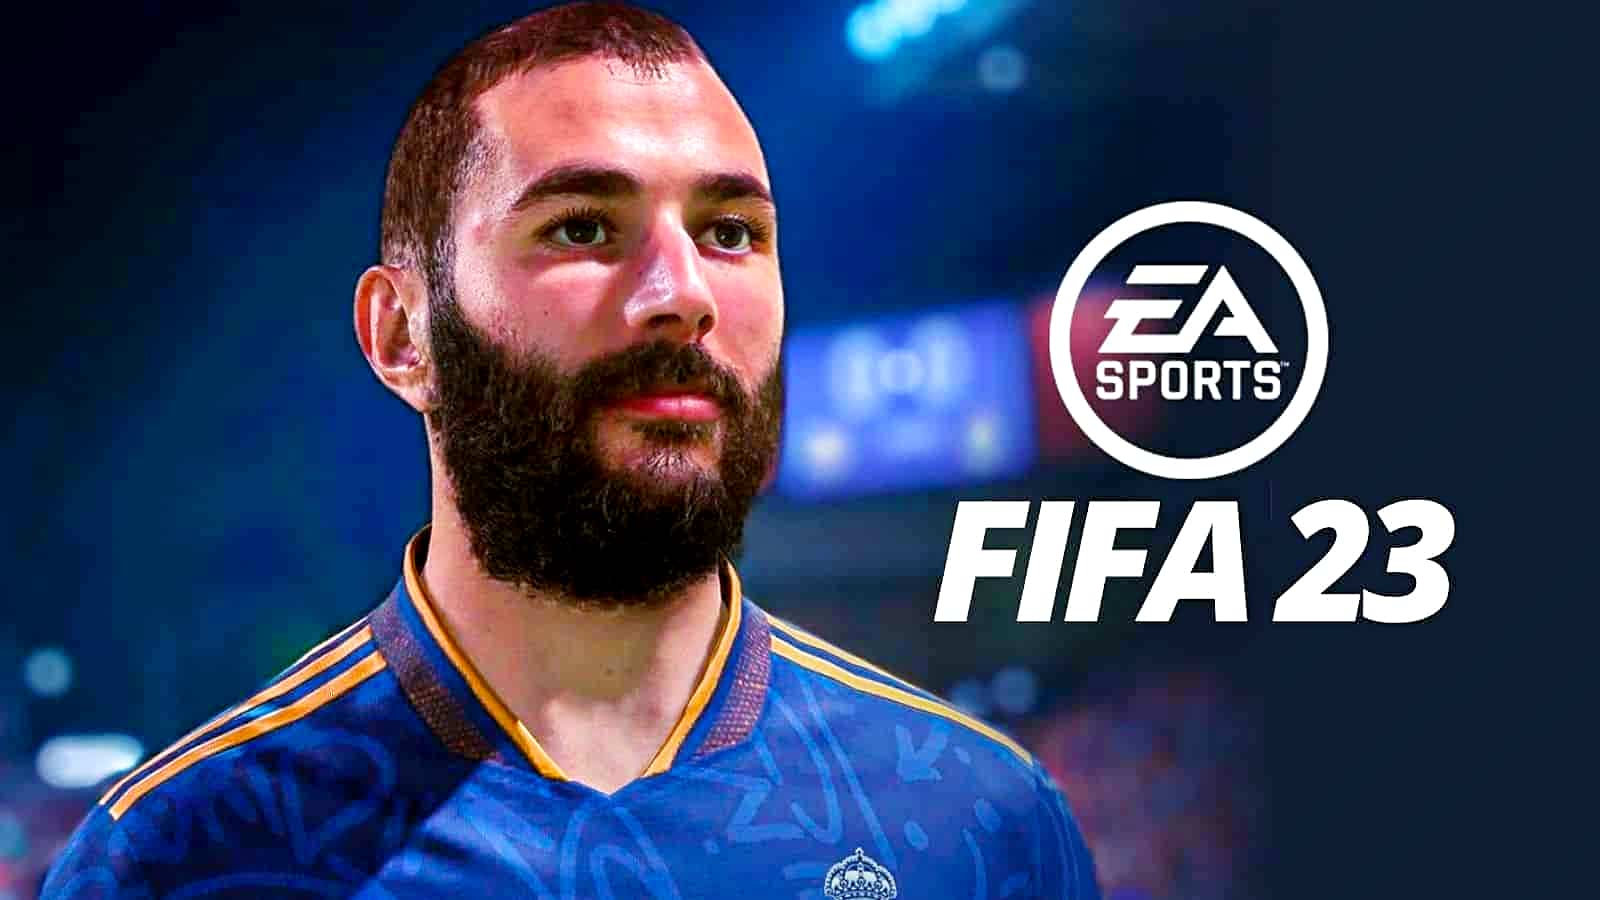 Problemas com anticheat de FIFA 23 derrubam avaliações do game no Steam